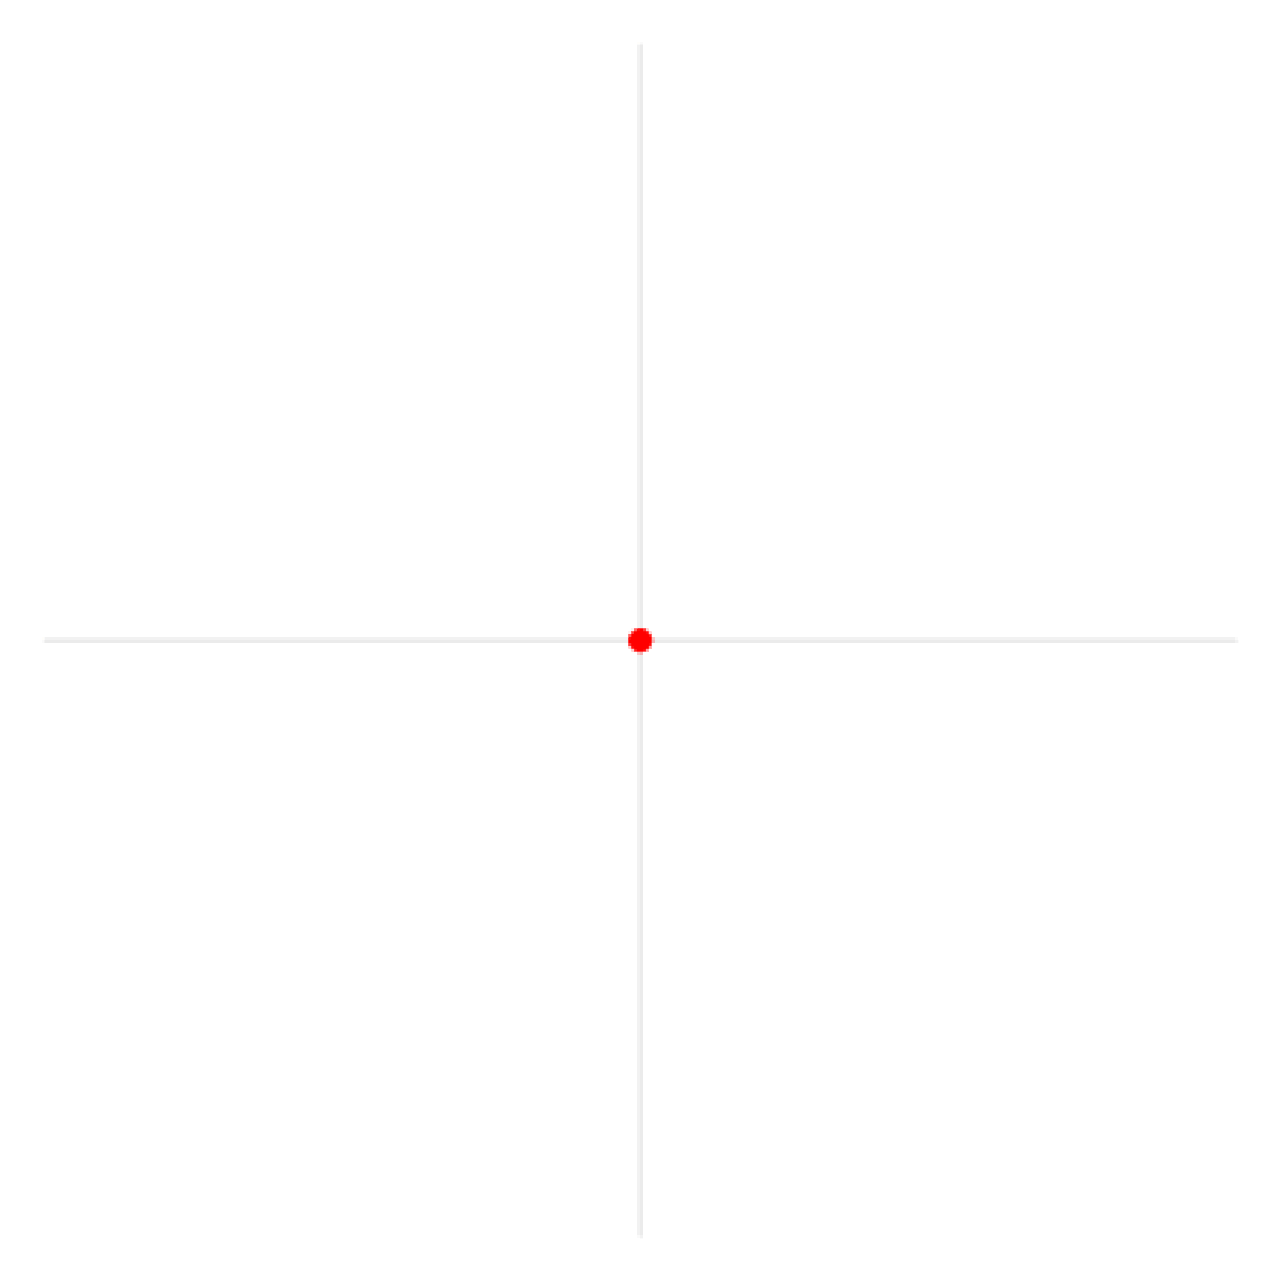 12.1 003. Crosshair белый. Рисунок разделённый на 4 части популярные. Осевая симметрия картинки. Циркуль гифка.